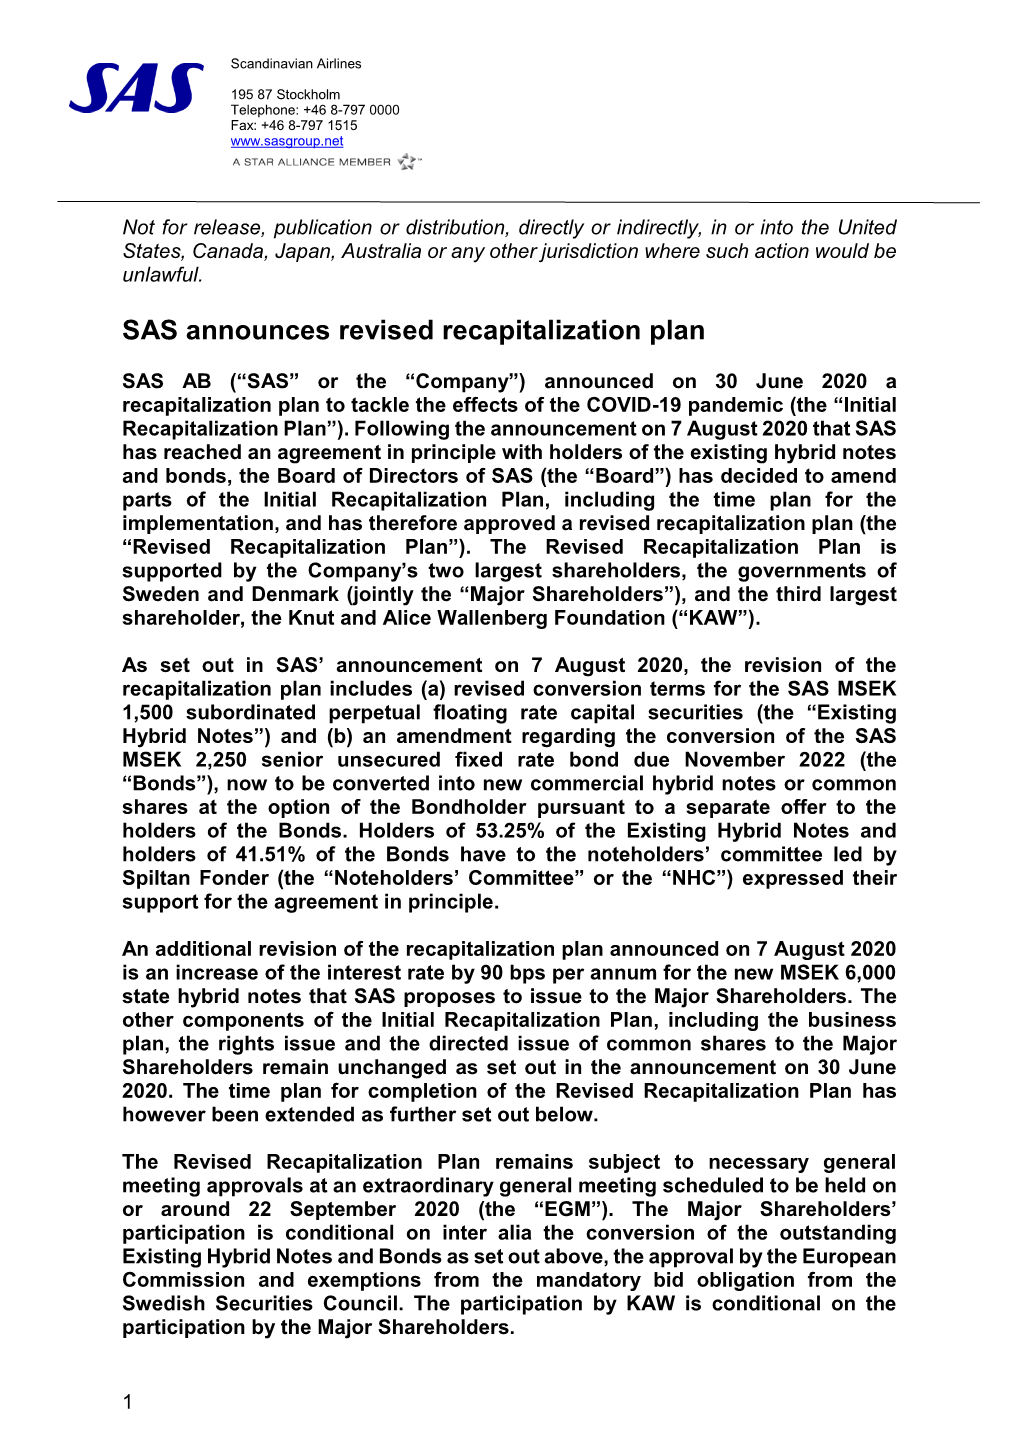 SAS Announces Revised Recapitalization Plan